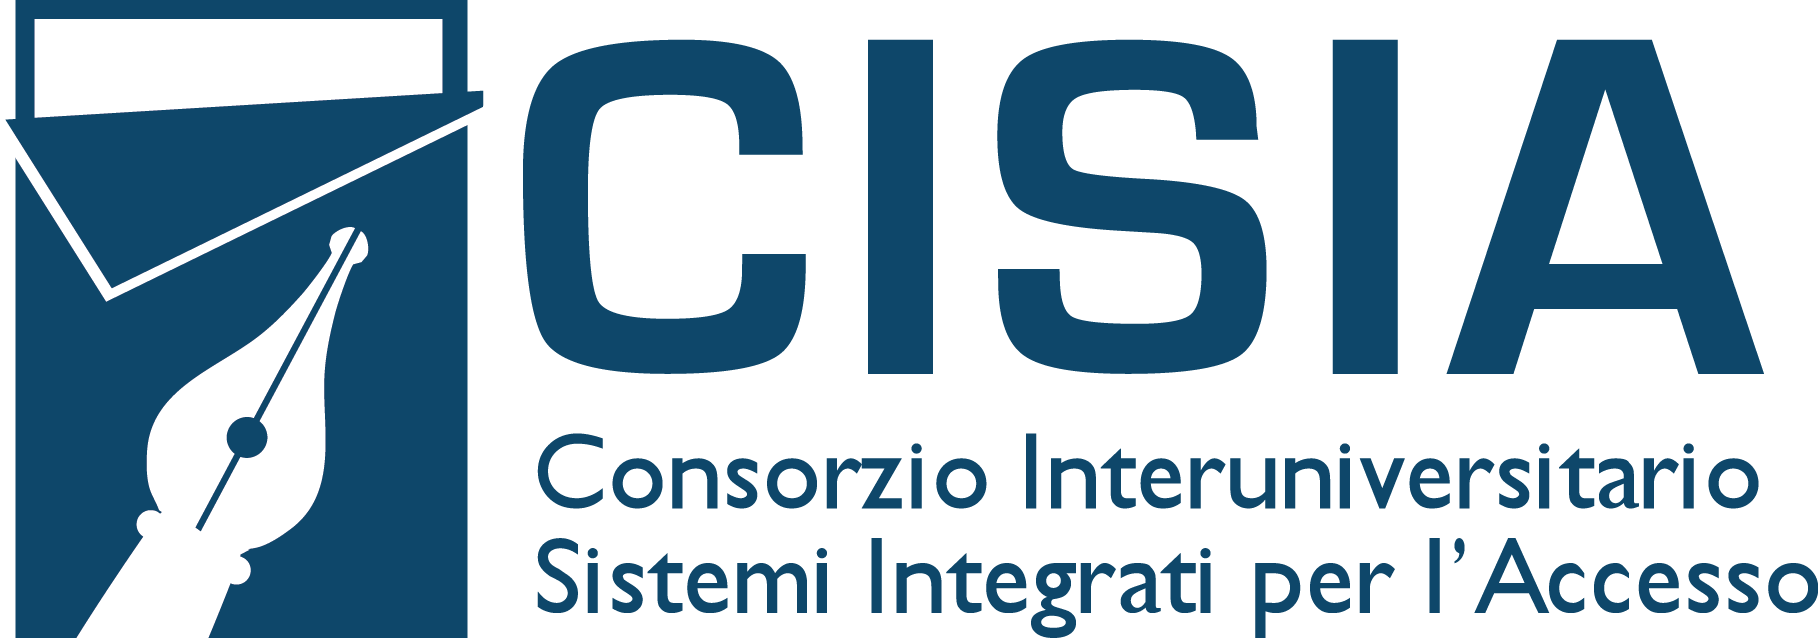 logo cisia - Consorzio interuniversitario sistemi integrati per l'accesso